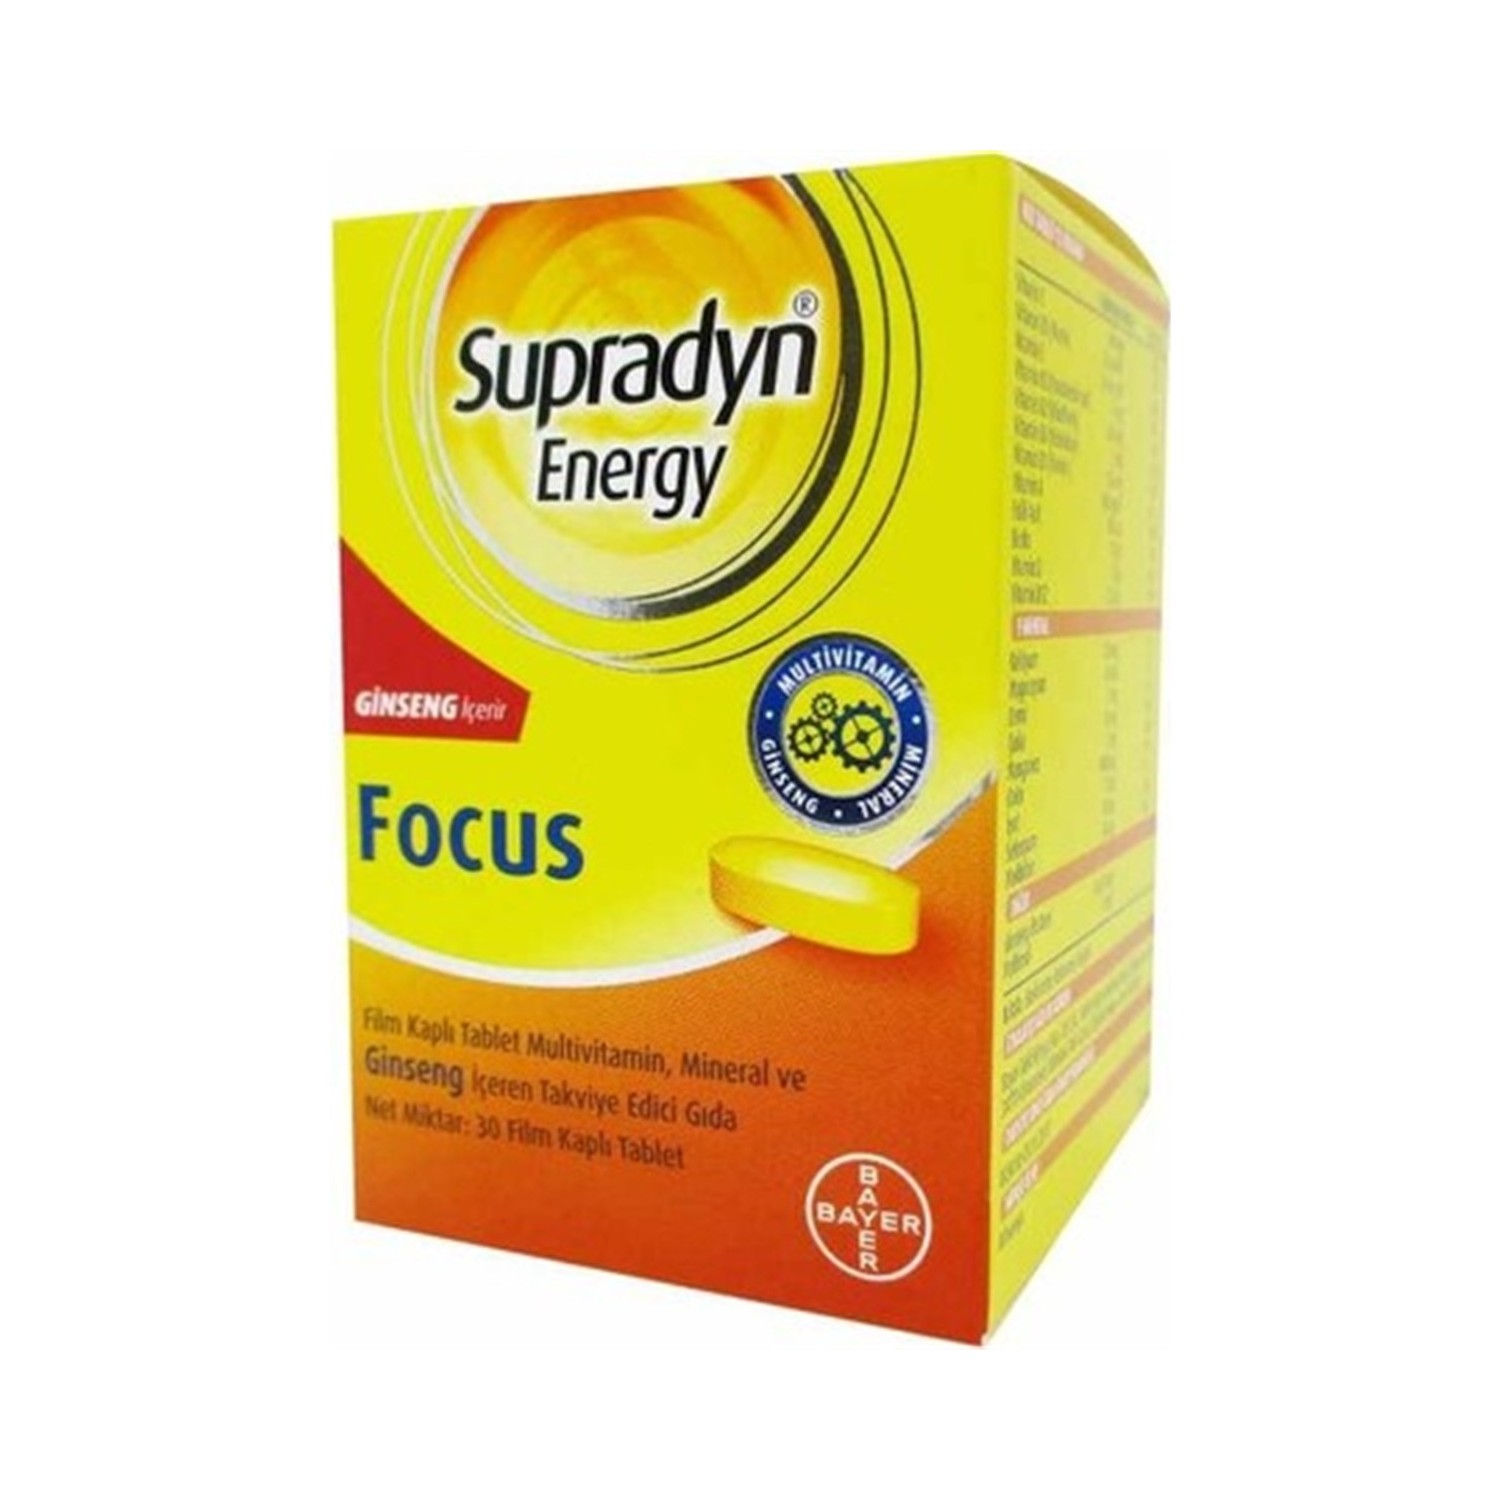 Focused energy. Supradyn Energy. Супрадин Энерджи Focus. Supradyn Bayer. Супрадин с женьшенем.